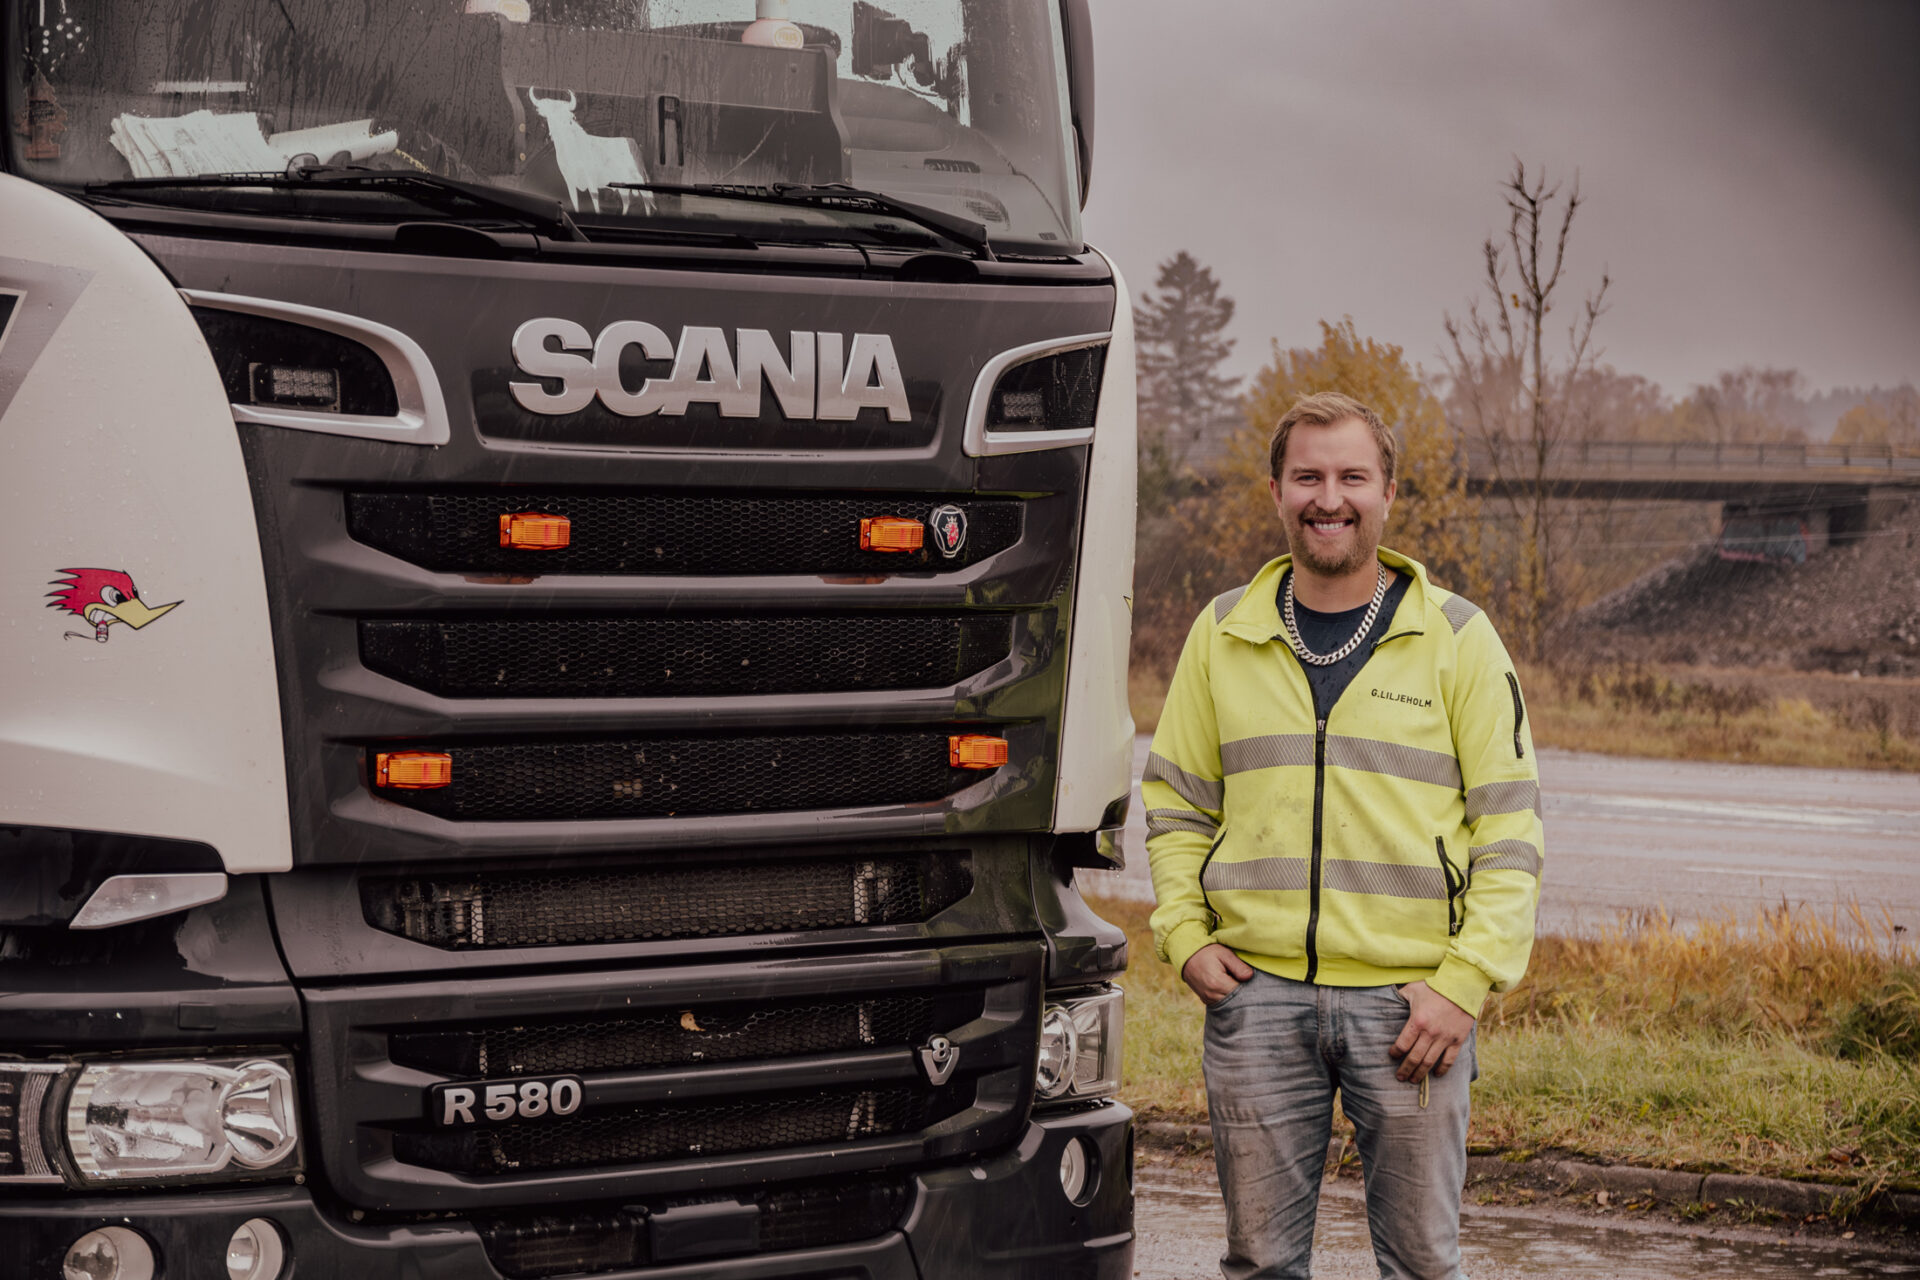 Upptäck en unik glimt av Gurra Liljeholm, den karismatiska lastbilsföraren, som stolt står bredvid sin glänsande Scania. En bild som fångar essensen av väglivet och den oförutsägbara charmen hos oväntade möten.